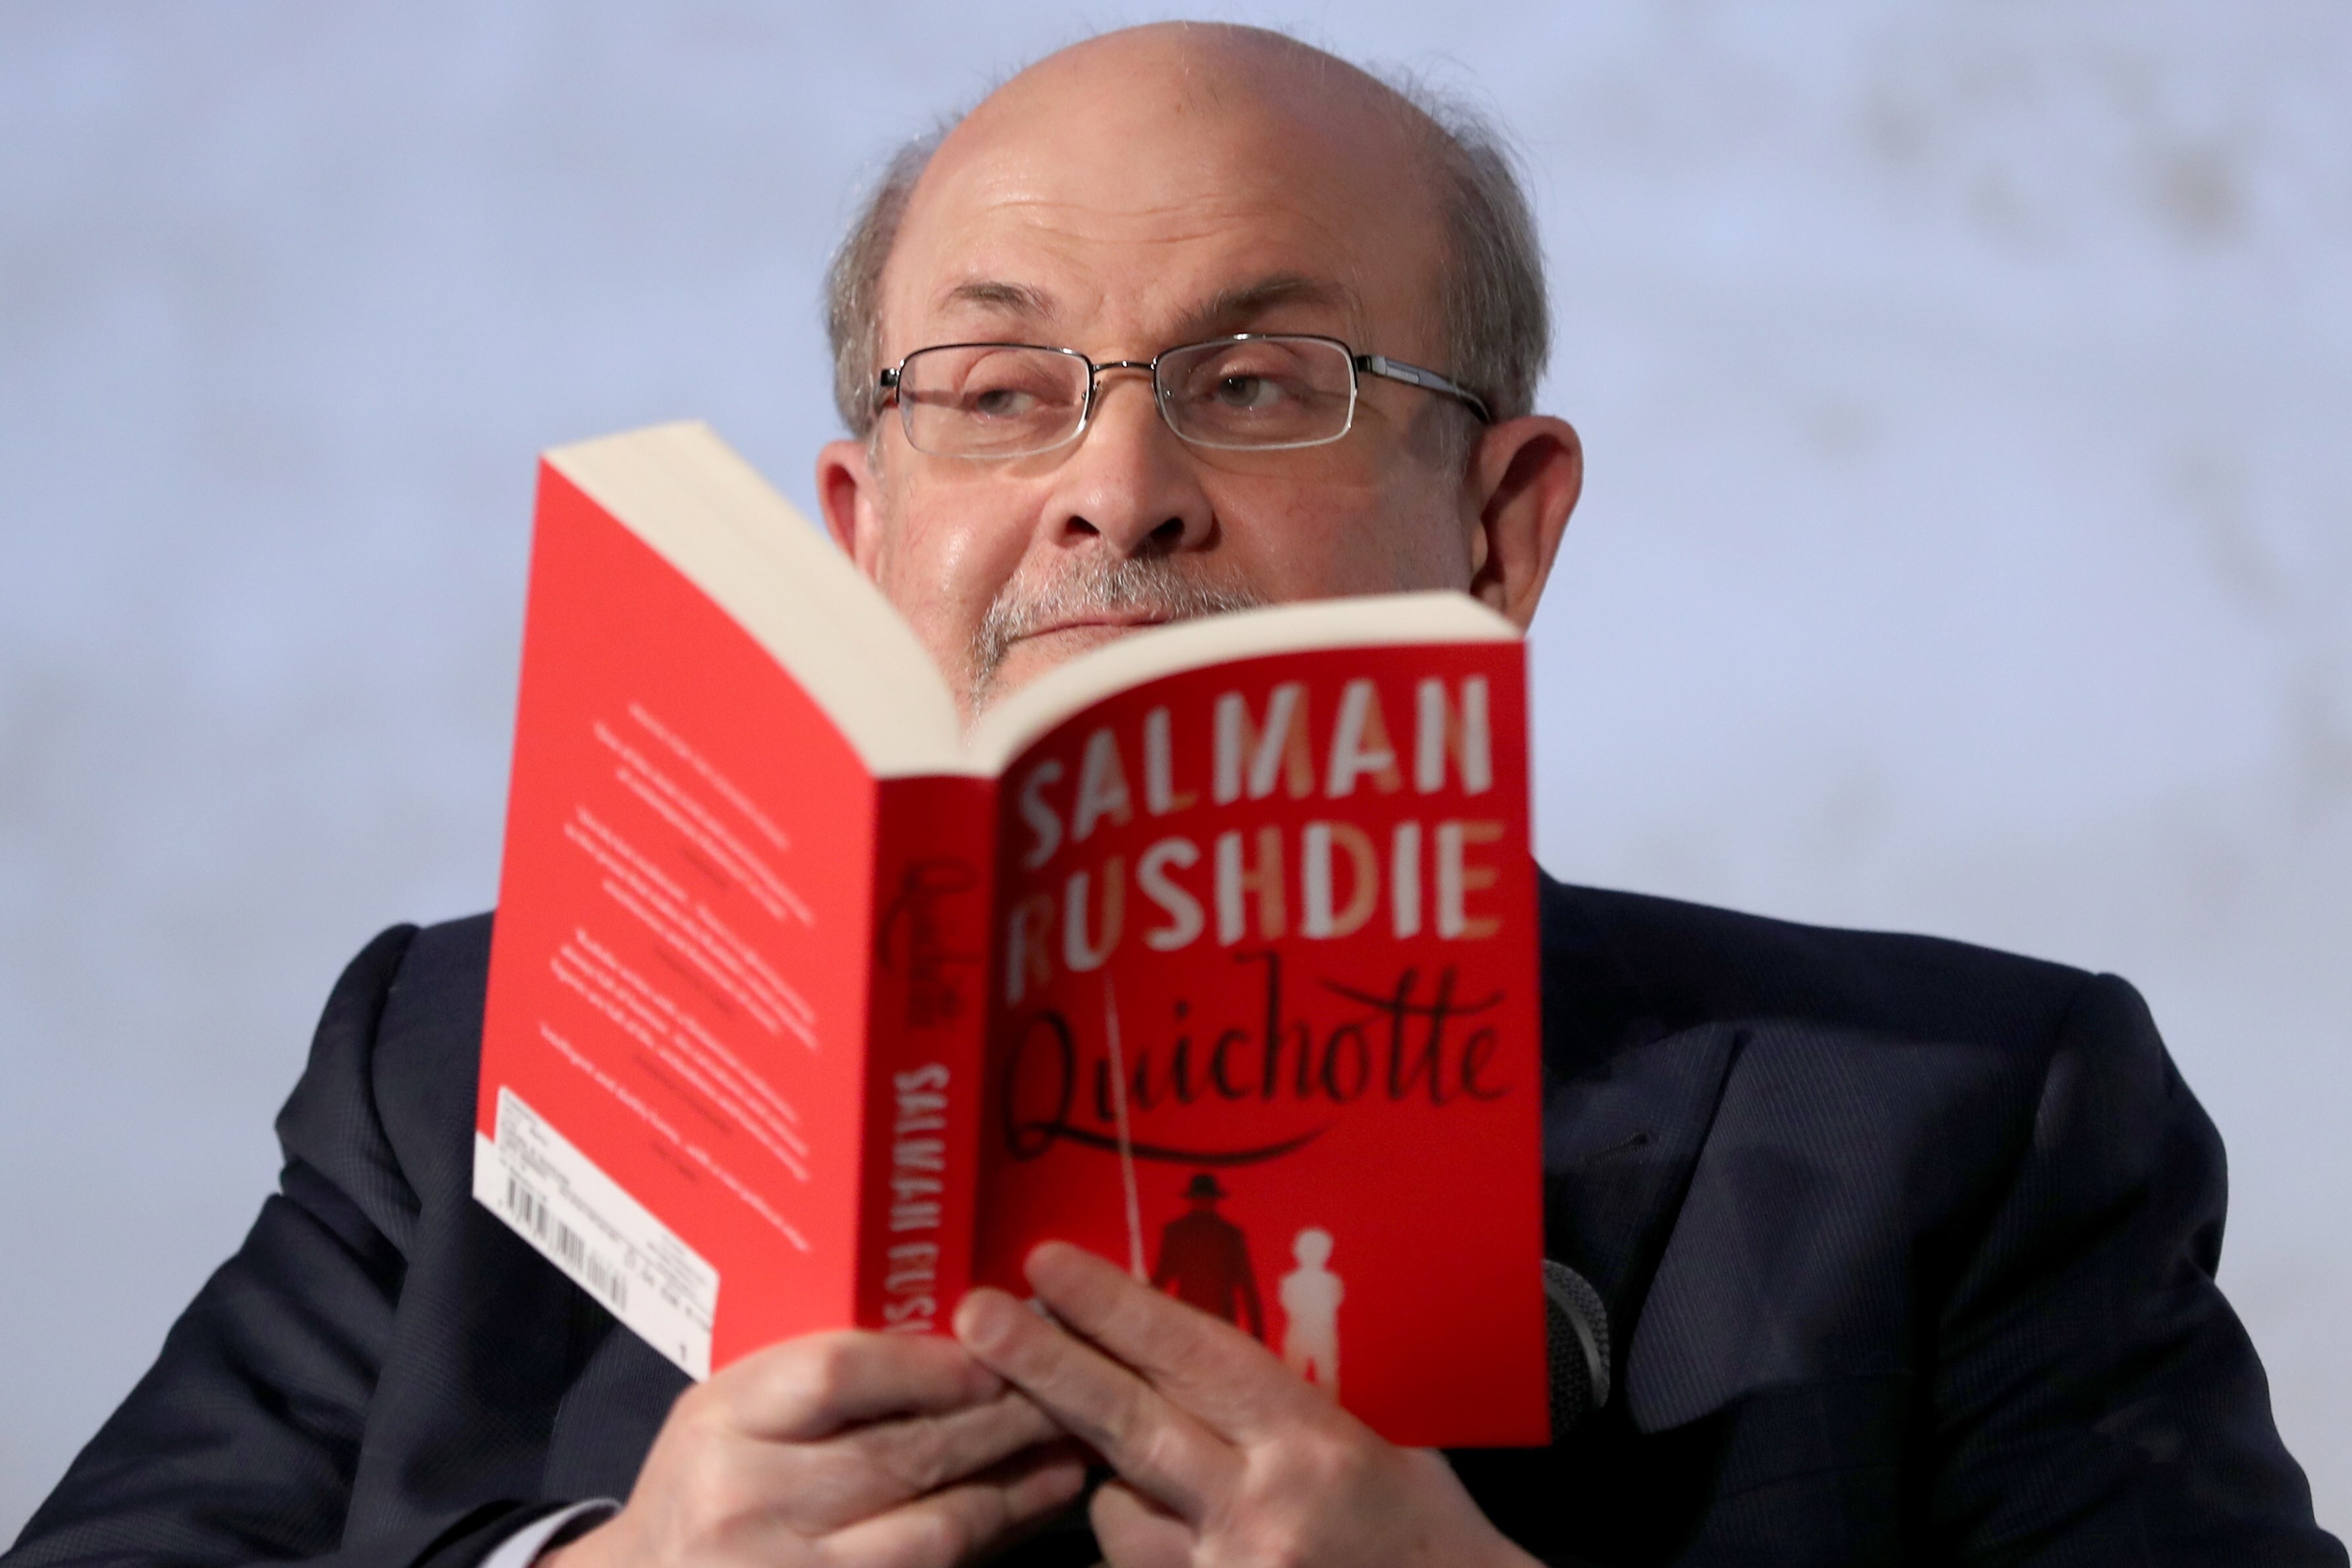 Cómo escribe Salman Rushdie, un autor signado por la controversia religiosa